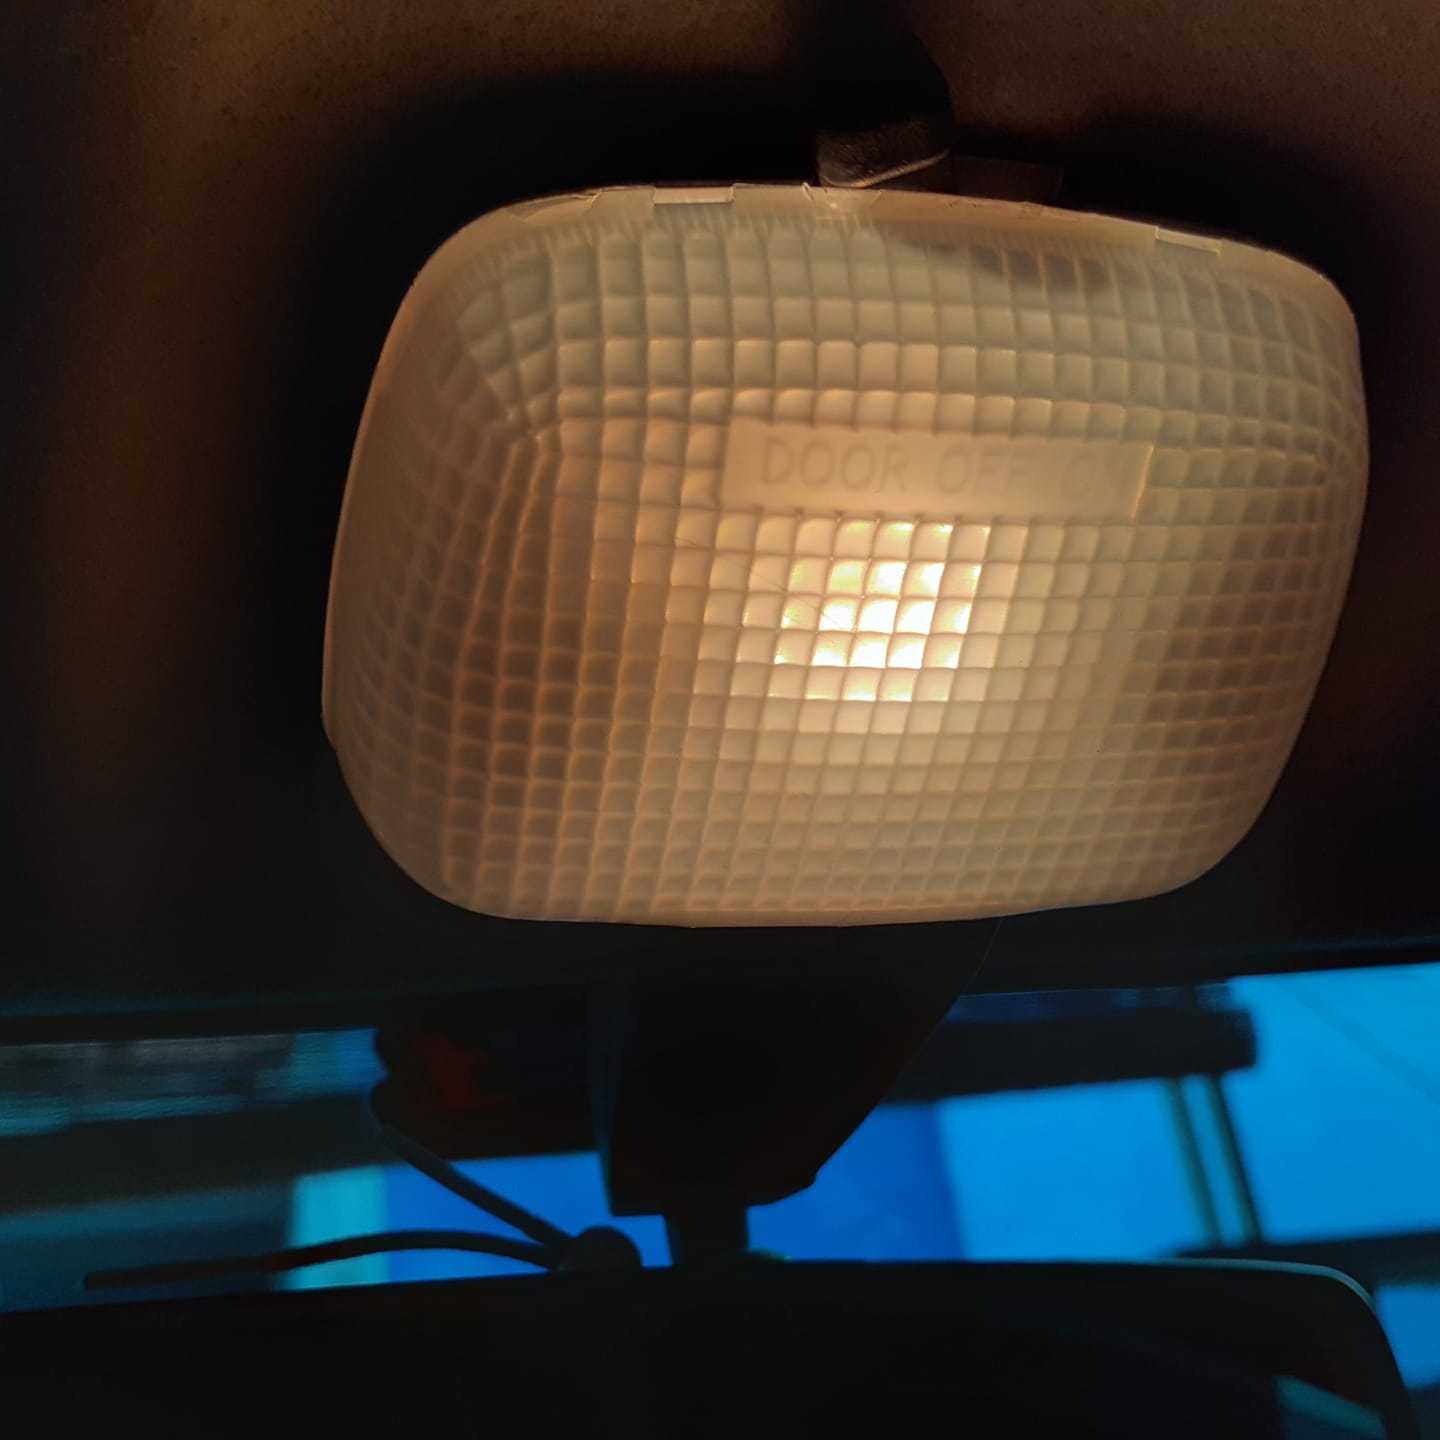 Lampu kabin di mobil, sebaiknya off, on atau door